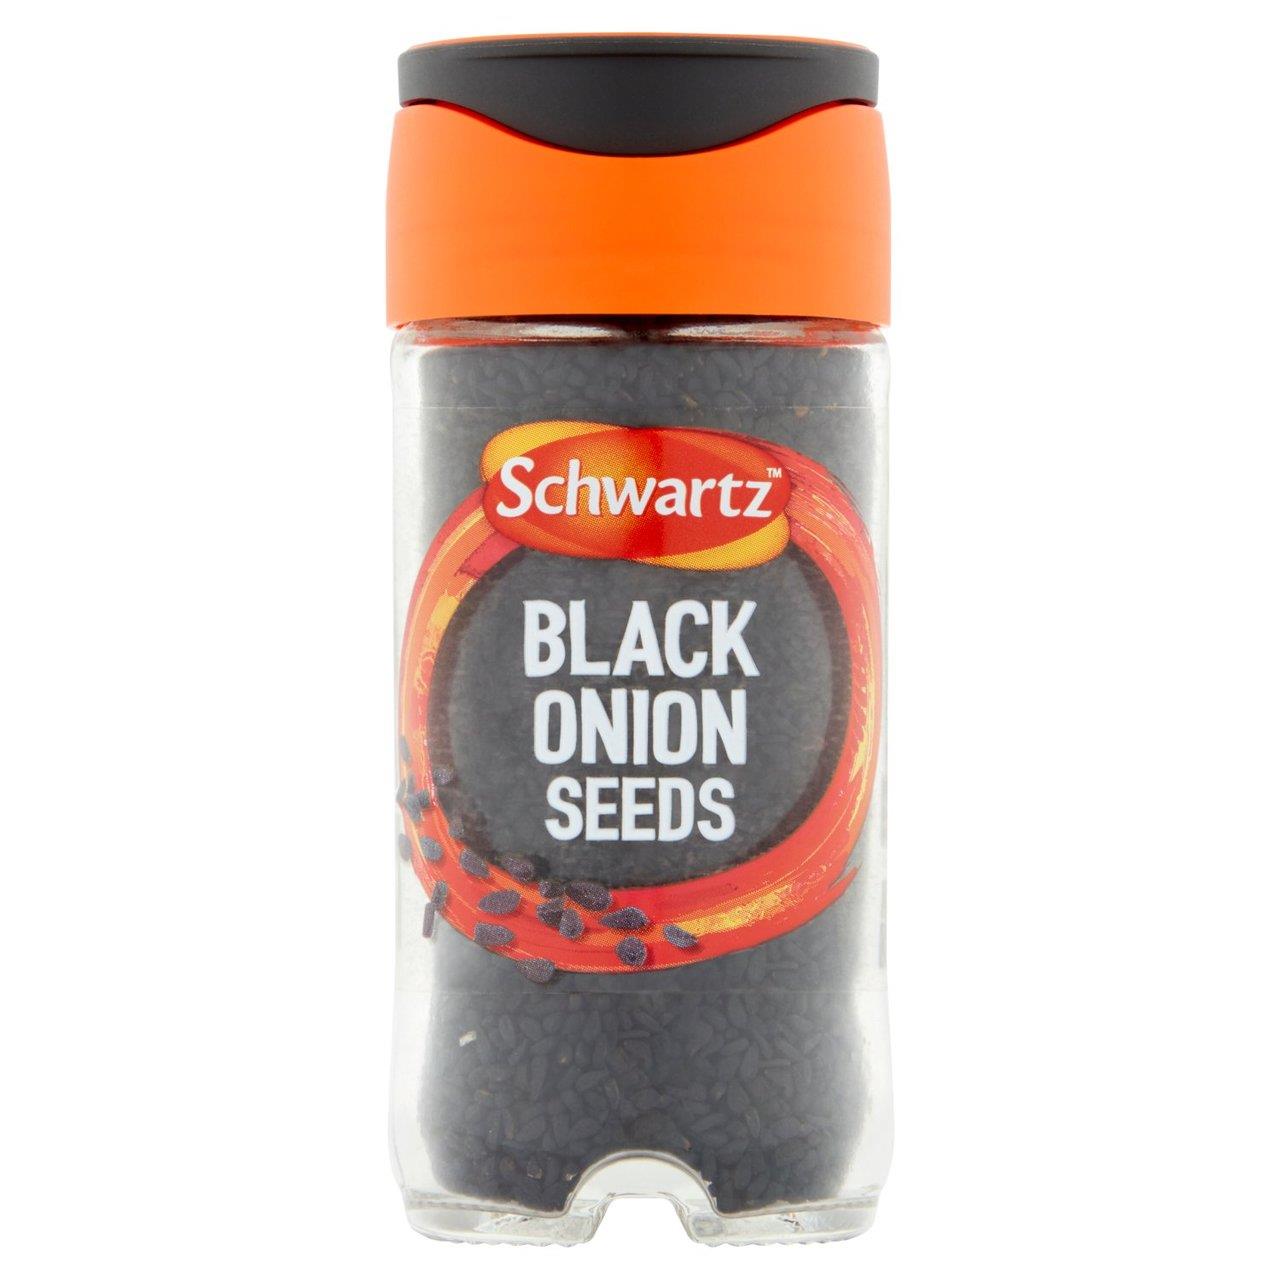 Schwartz Black Onion Seeds Jar 42g